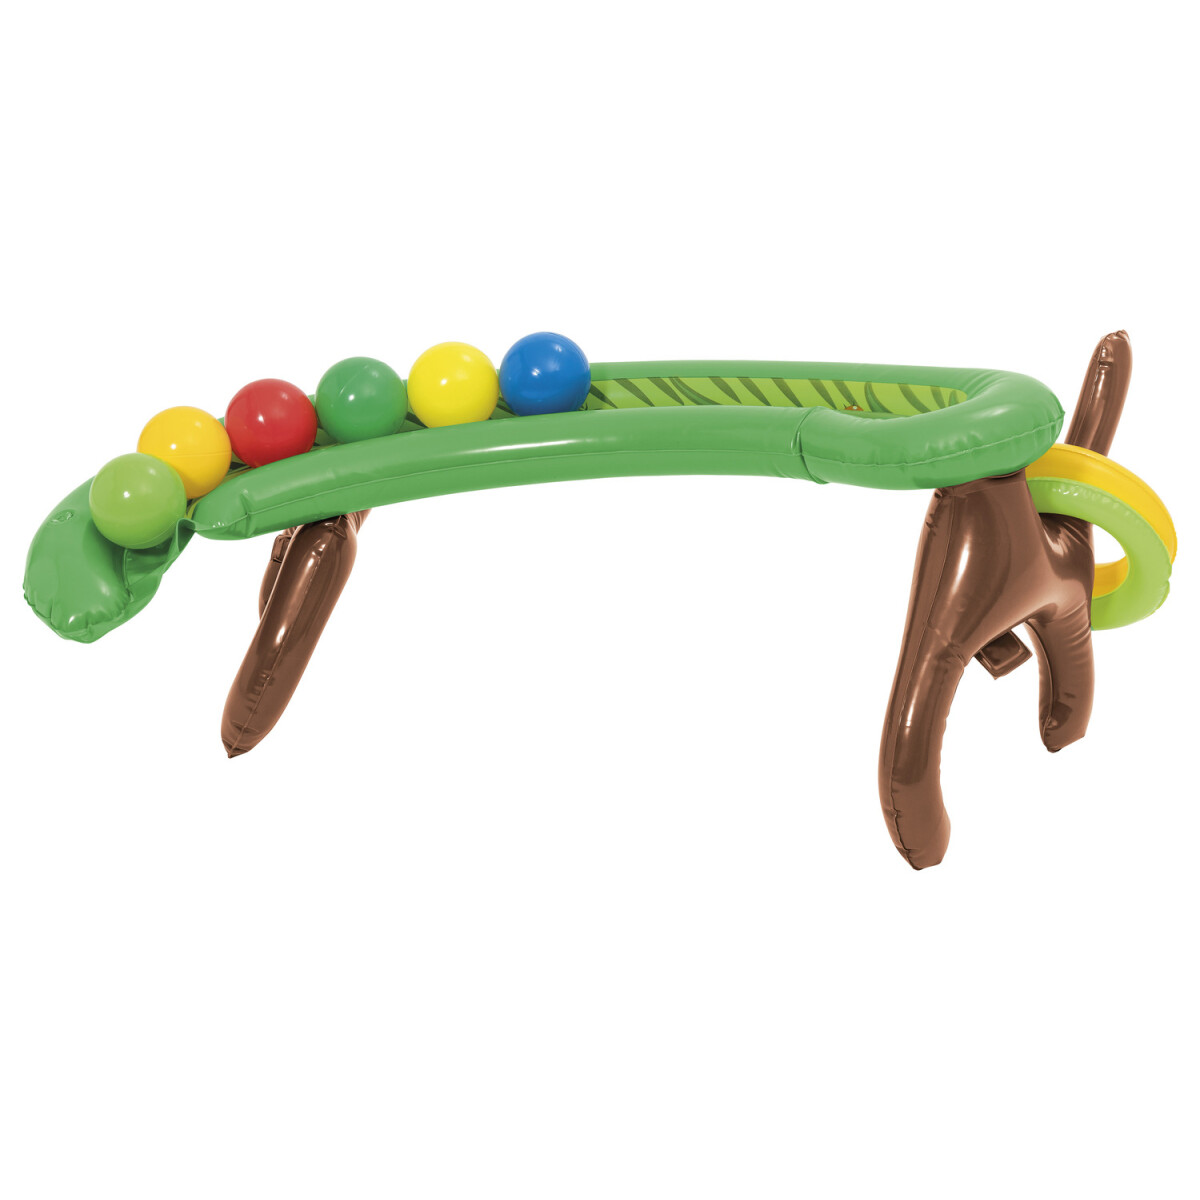 Playtive Kinder Erlebnispool Dschungelwelt, mit Rutsche - B-Ware sehr gut,  60,99 € | Luftmatratze & Wasserspielzeug